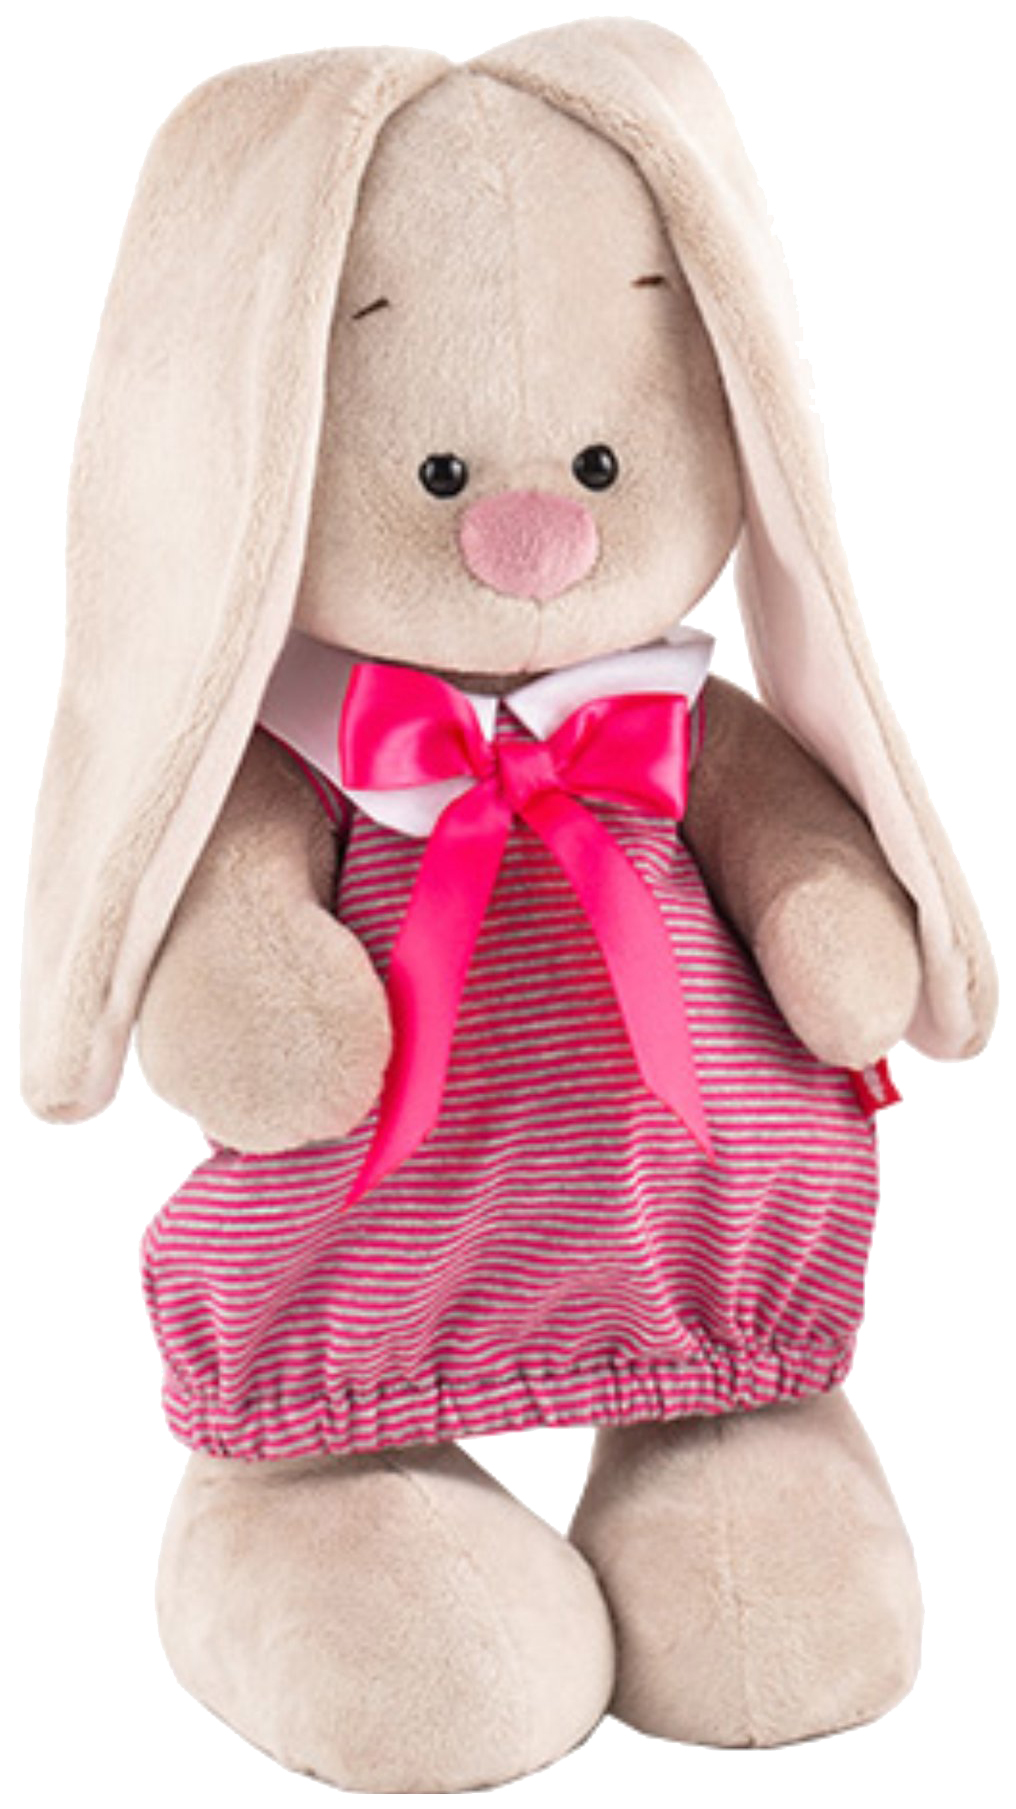 Мягкая игрушка BUDI BASA StS-257 Зайка Ми в платье в розовую полоску (малая) мягкая игрушка budi basa зайка ми в коралловом платье 23 см